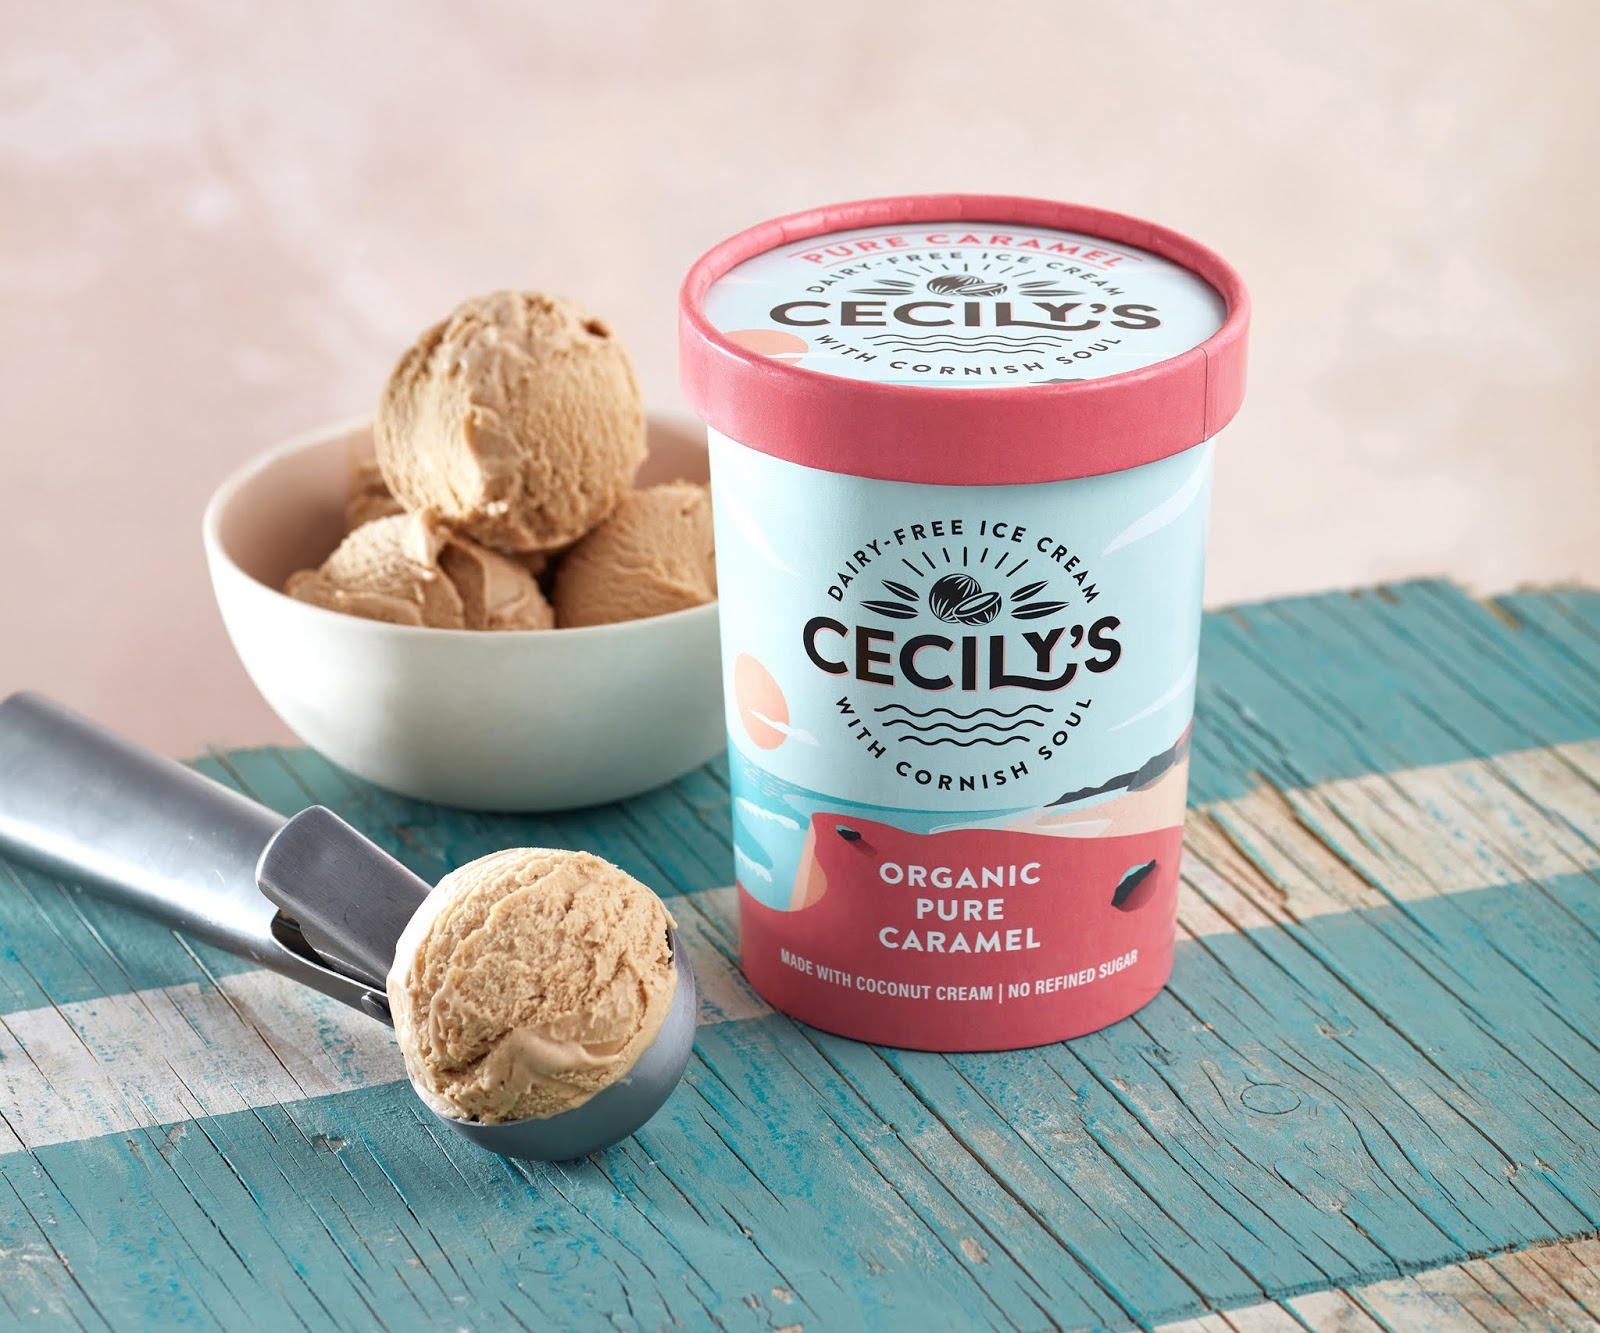 Cecily's冰淇淋品牌包装设计